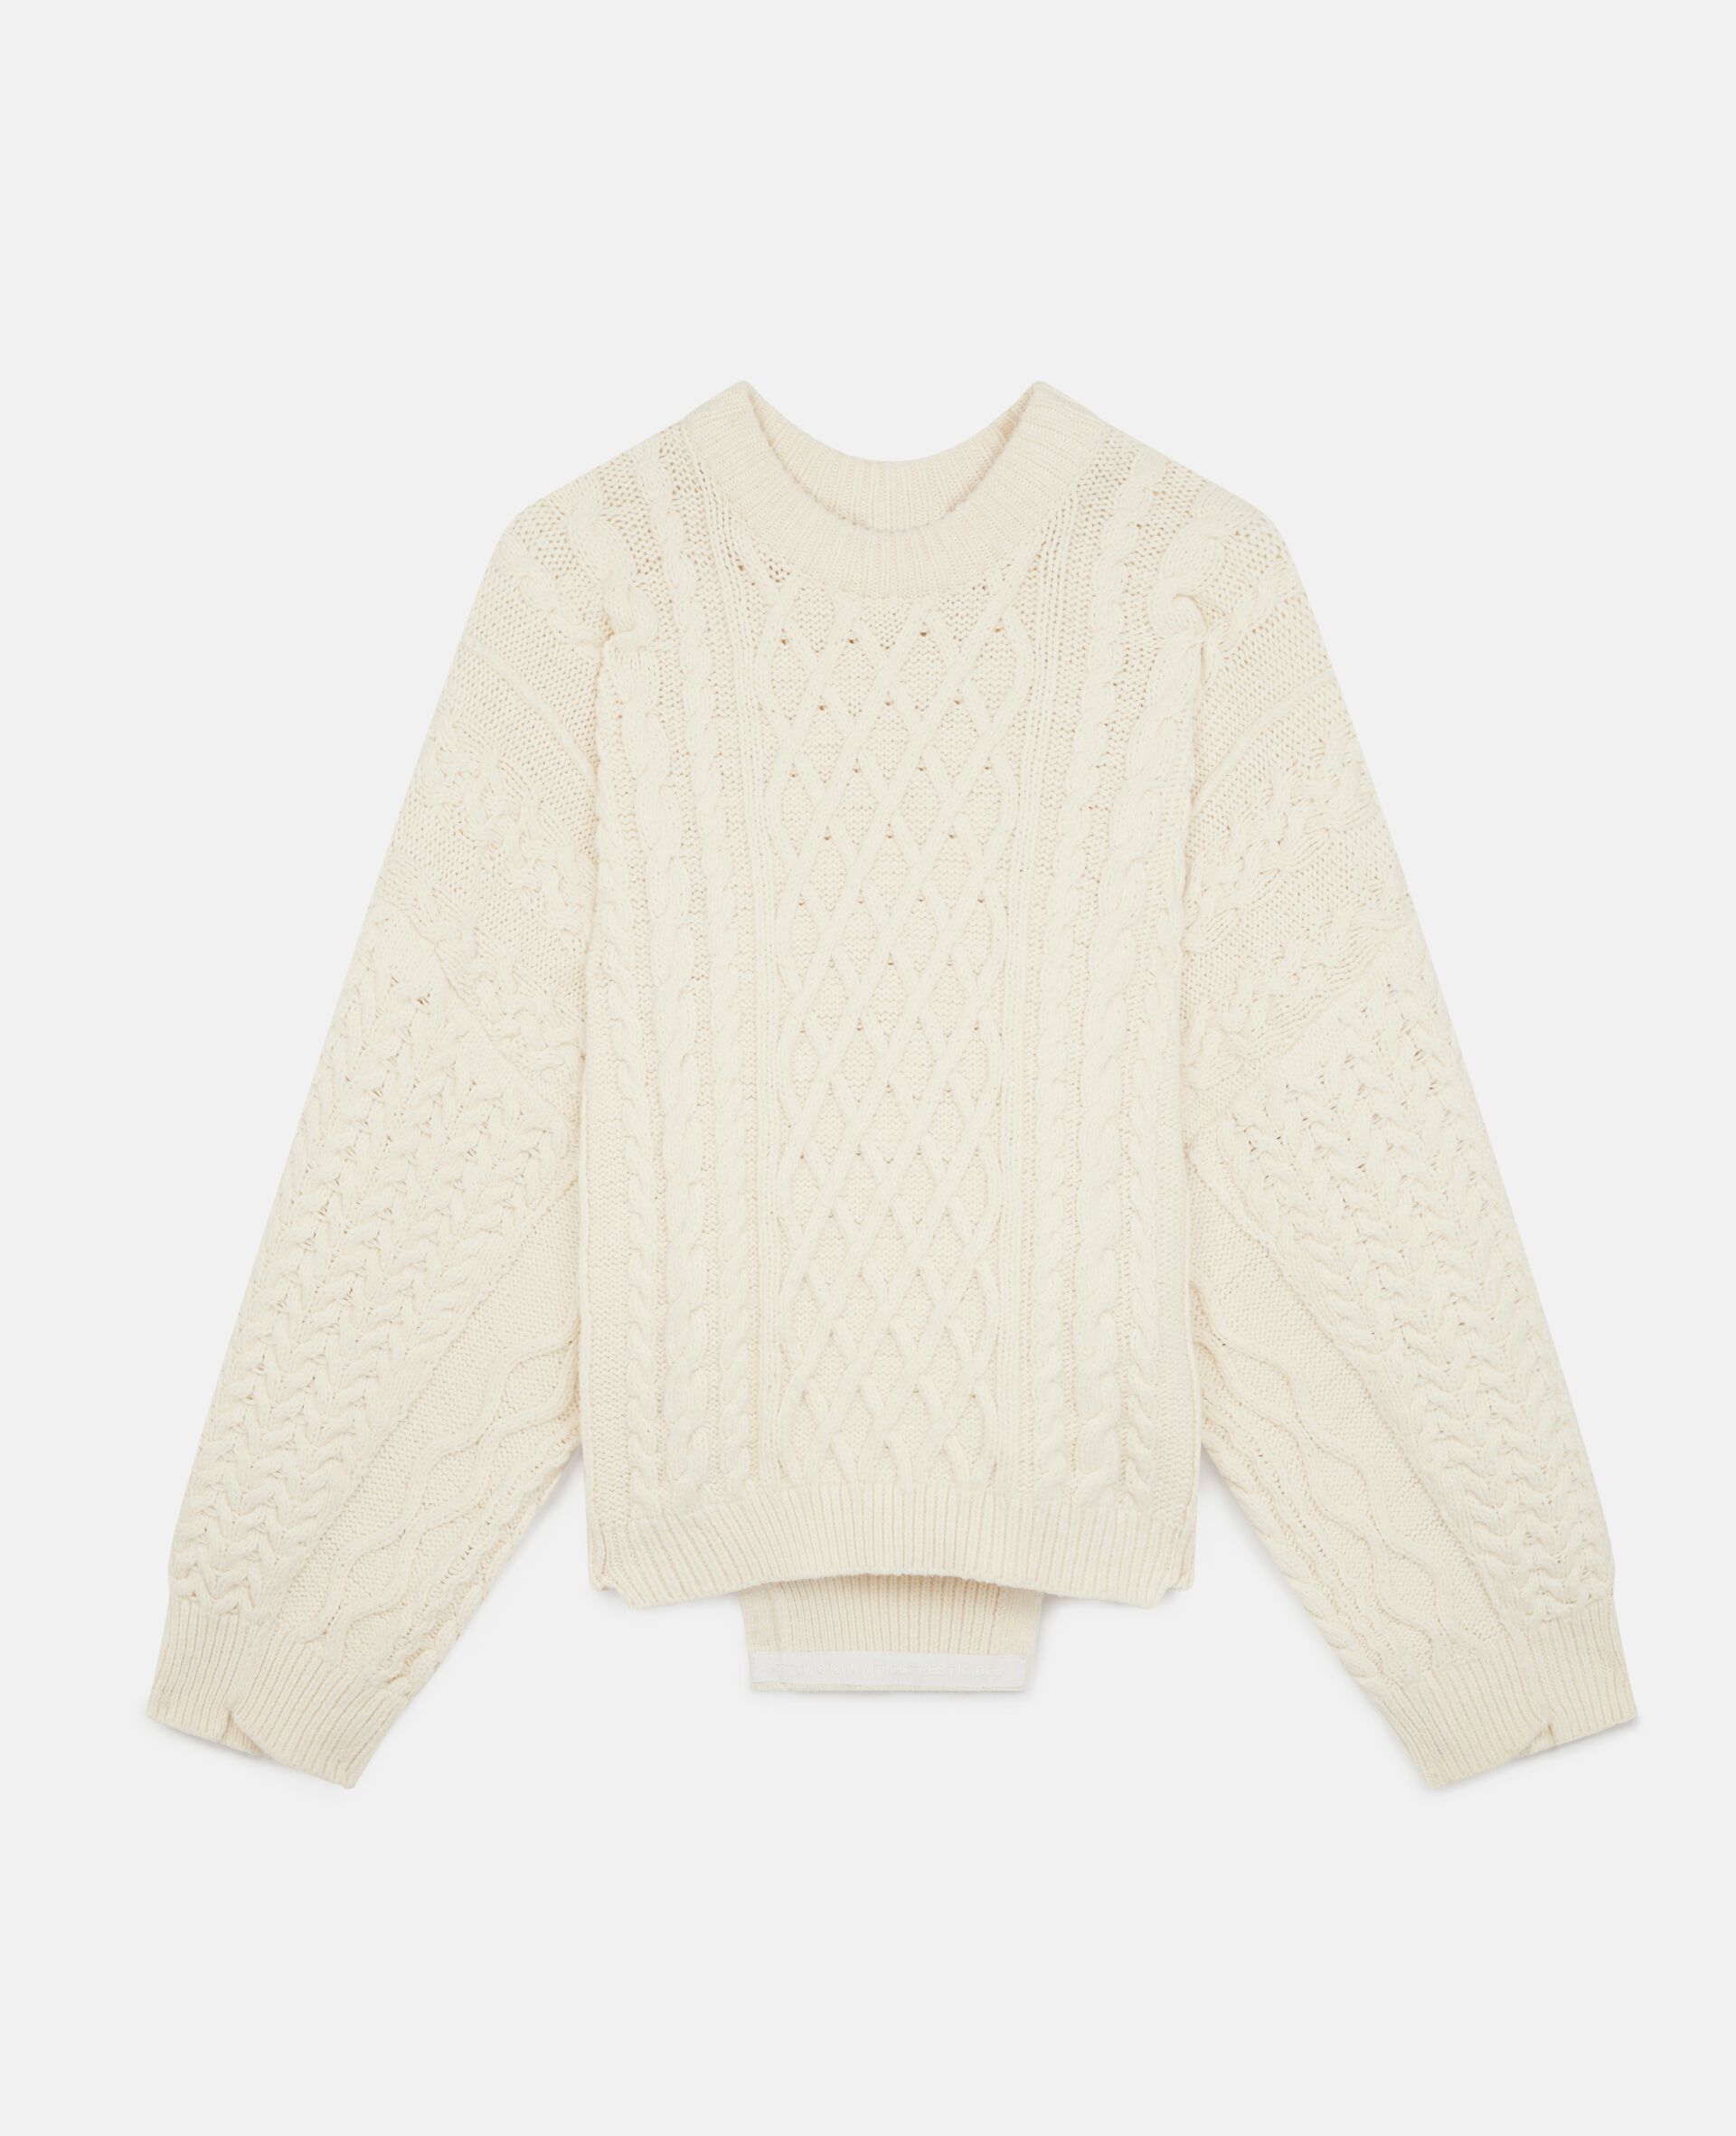 Aran Stitch Oversized Sweater-White-large image number 0